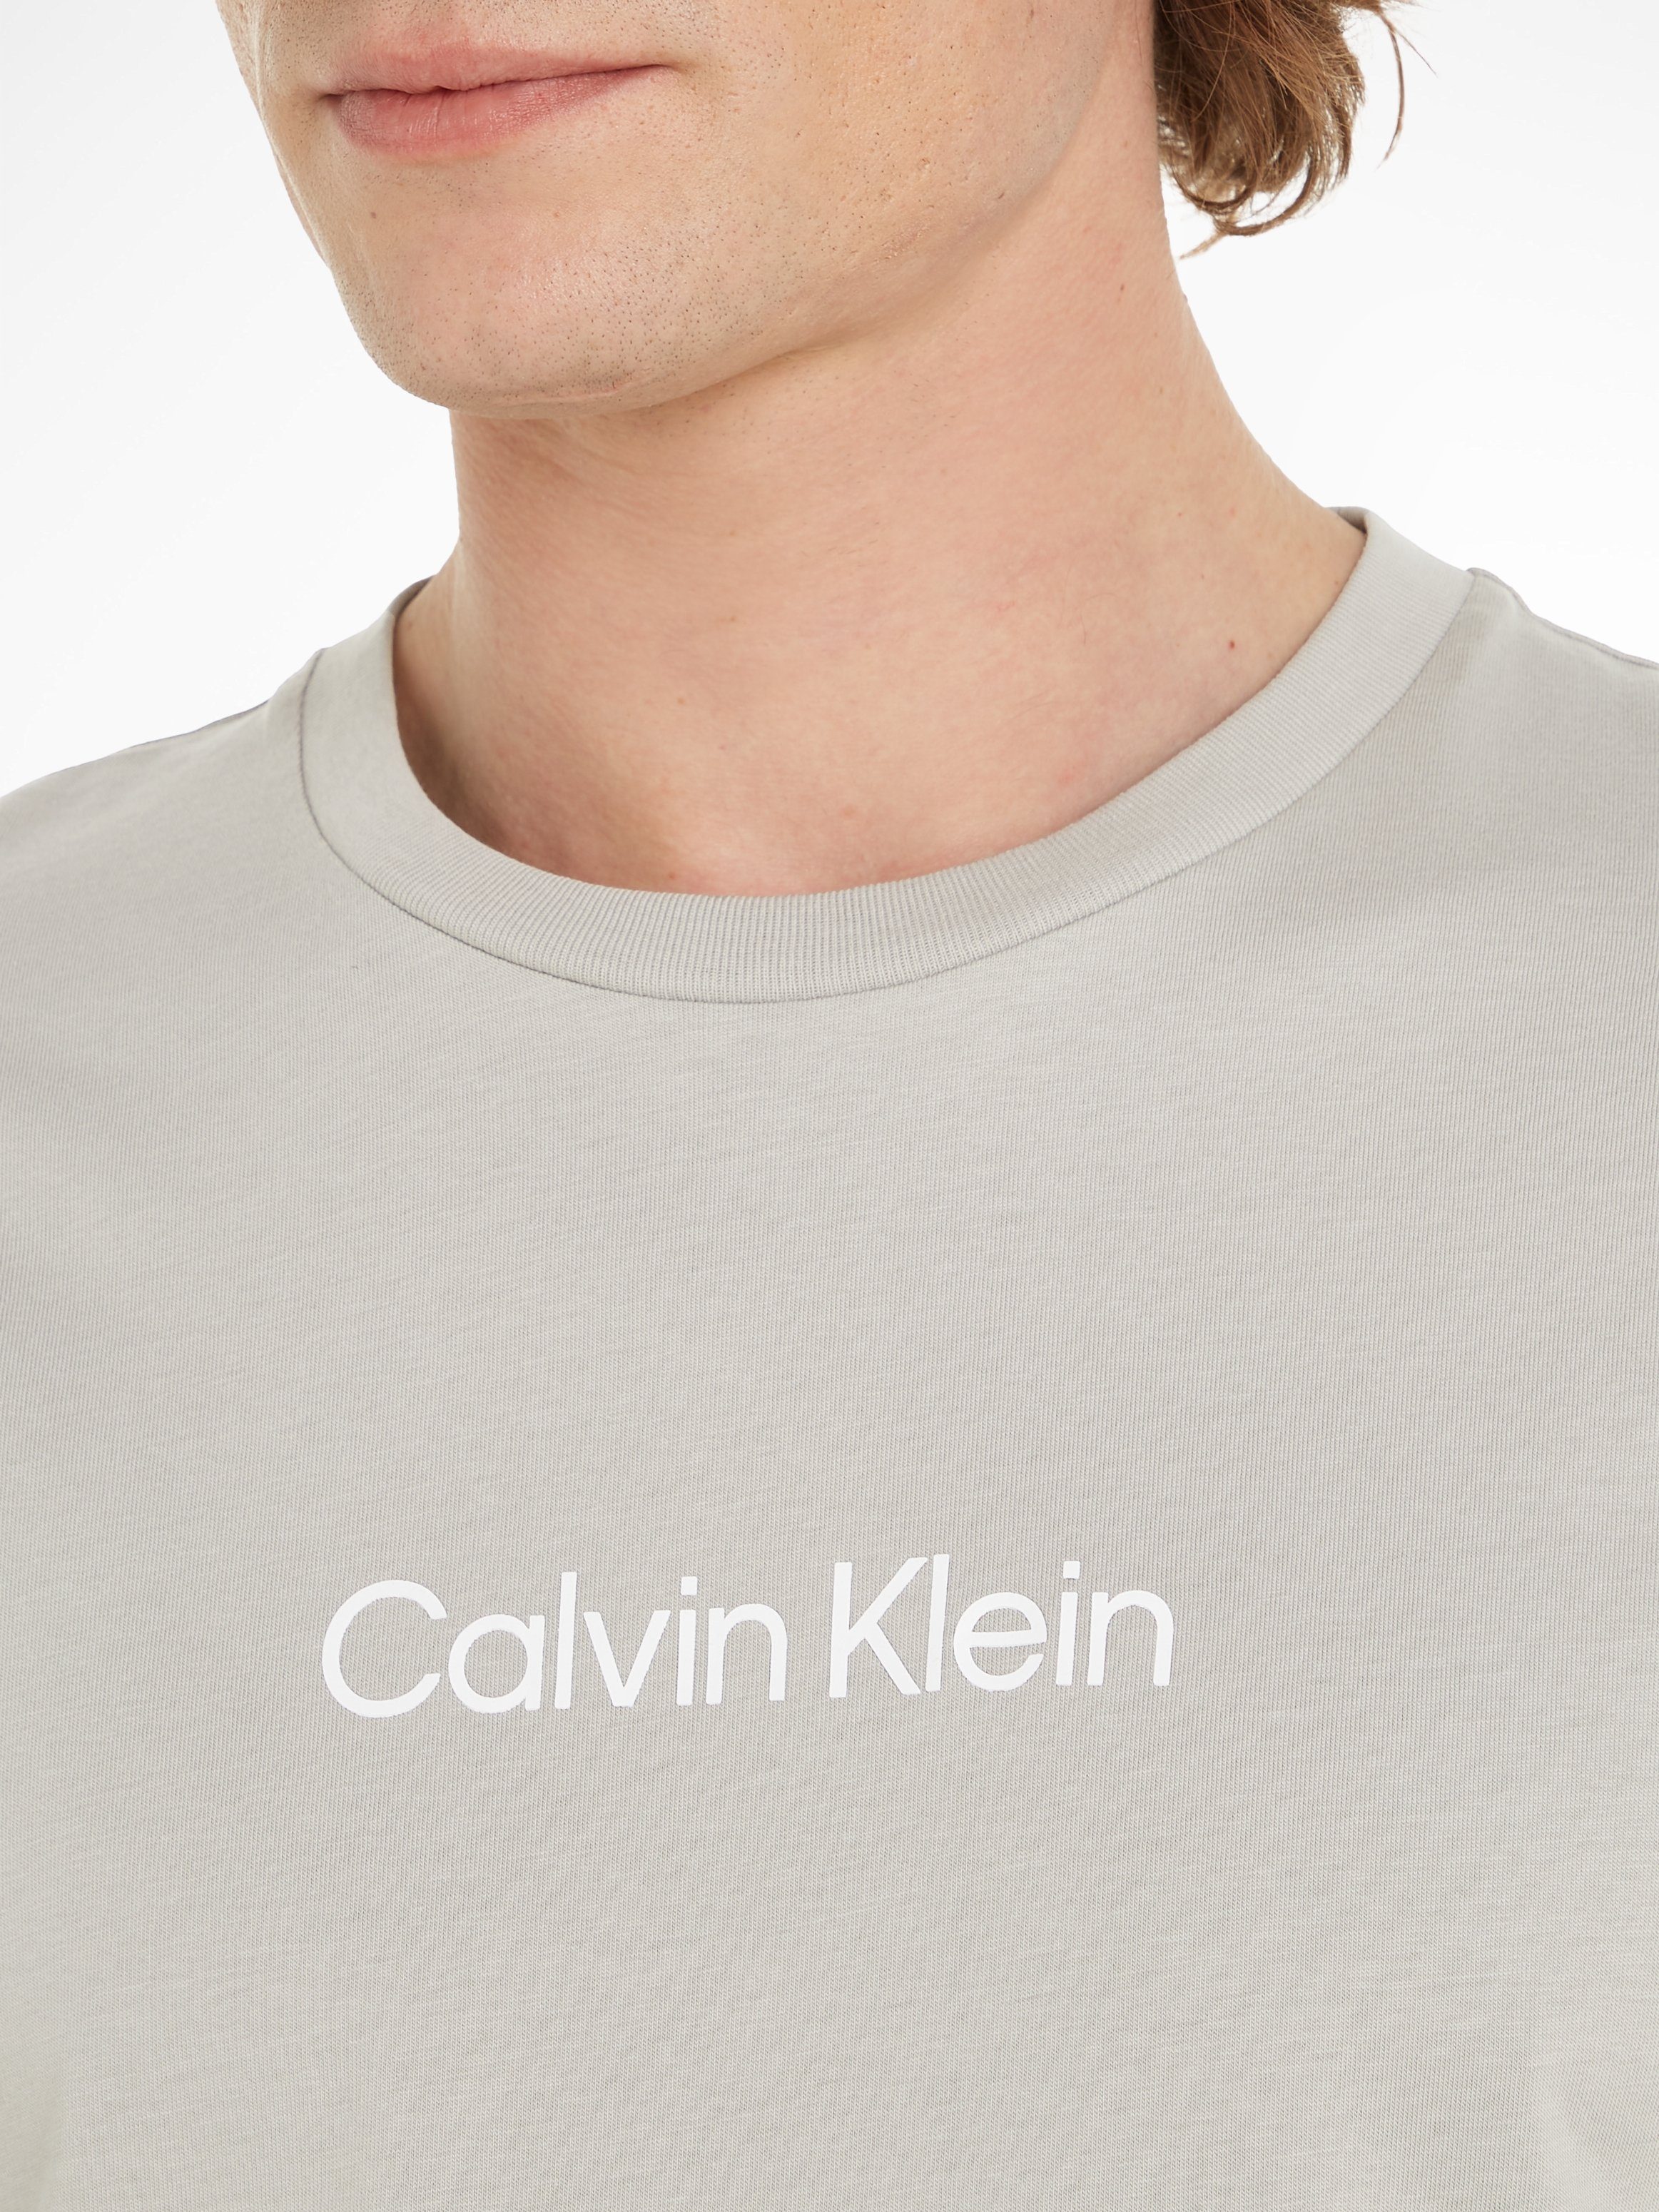 Calvin Klein T-Shirt COMFORT LOGO Ghost HERO Gray Markenlabel aufgedrucktem mit T-SHIRT